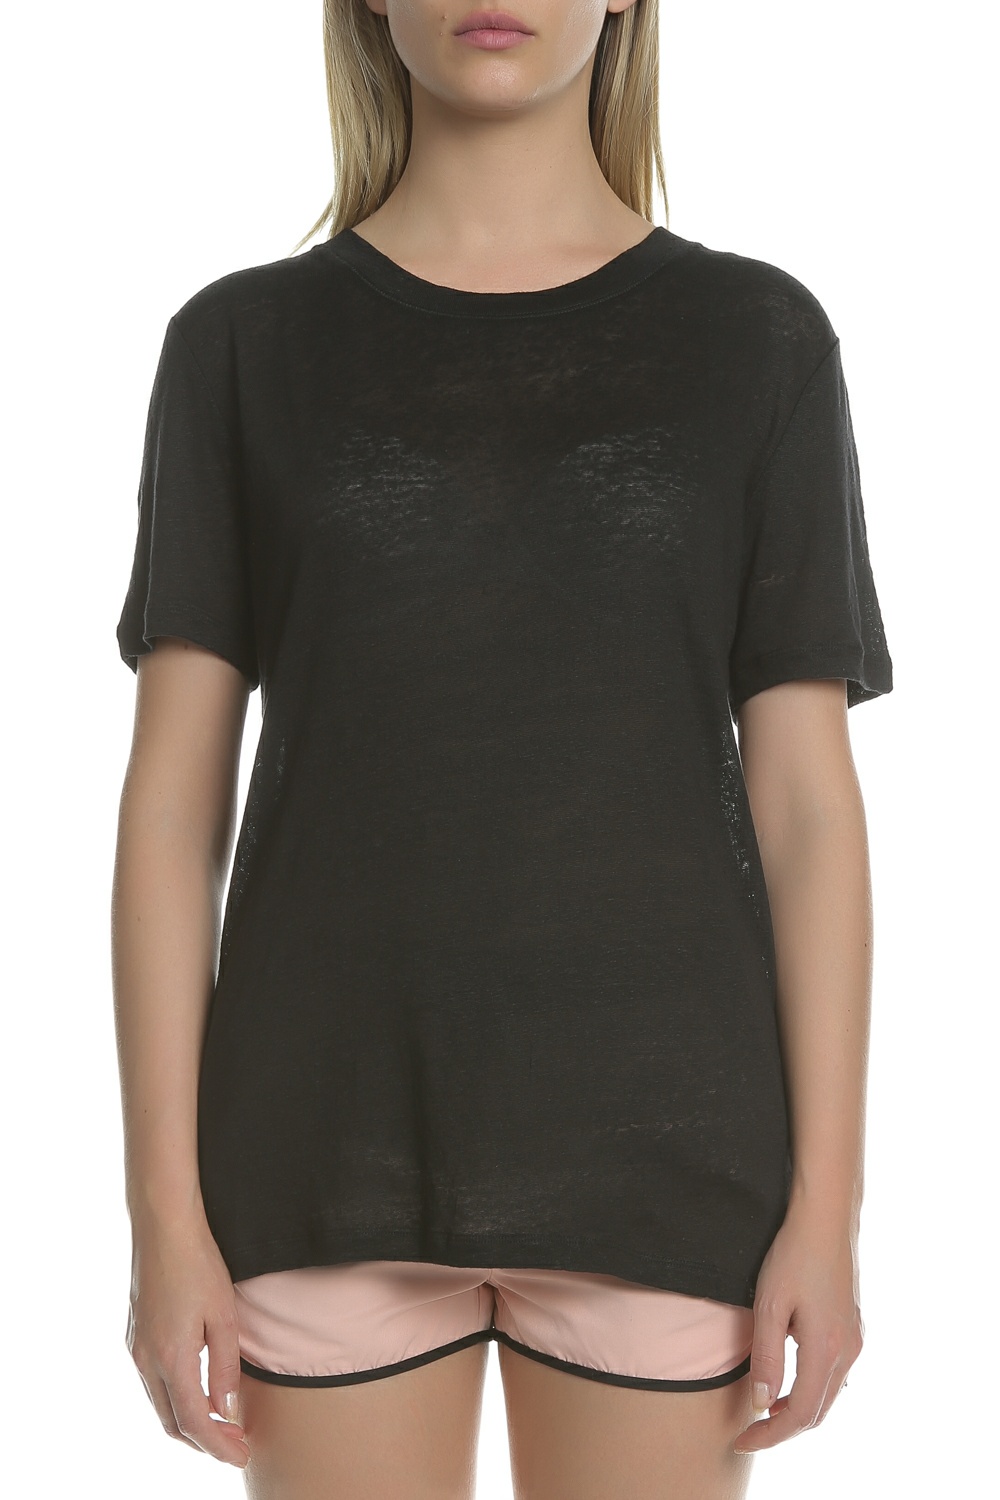 Γυναικεία/Ρούχα/Μπλούζες/Κοντομάνικες SCOTCH & SODA - Γυναικεία κοντομάνικη μπλούζα SCOTCH & SODA μαύρη